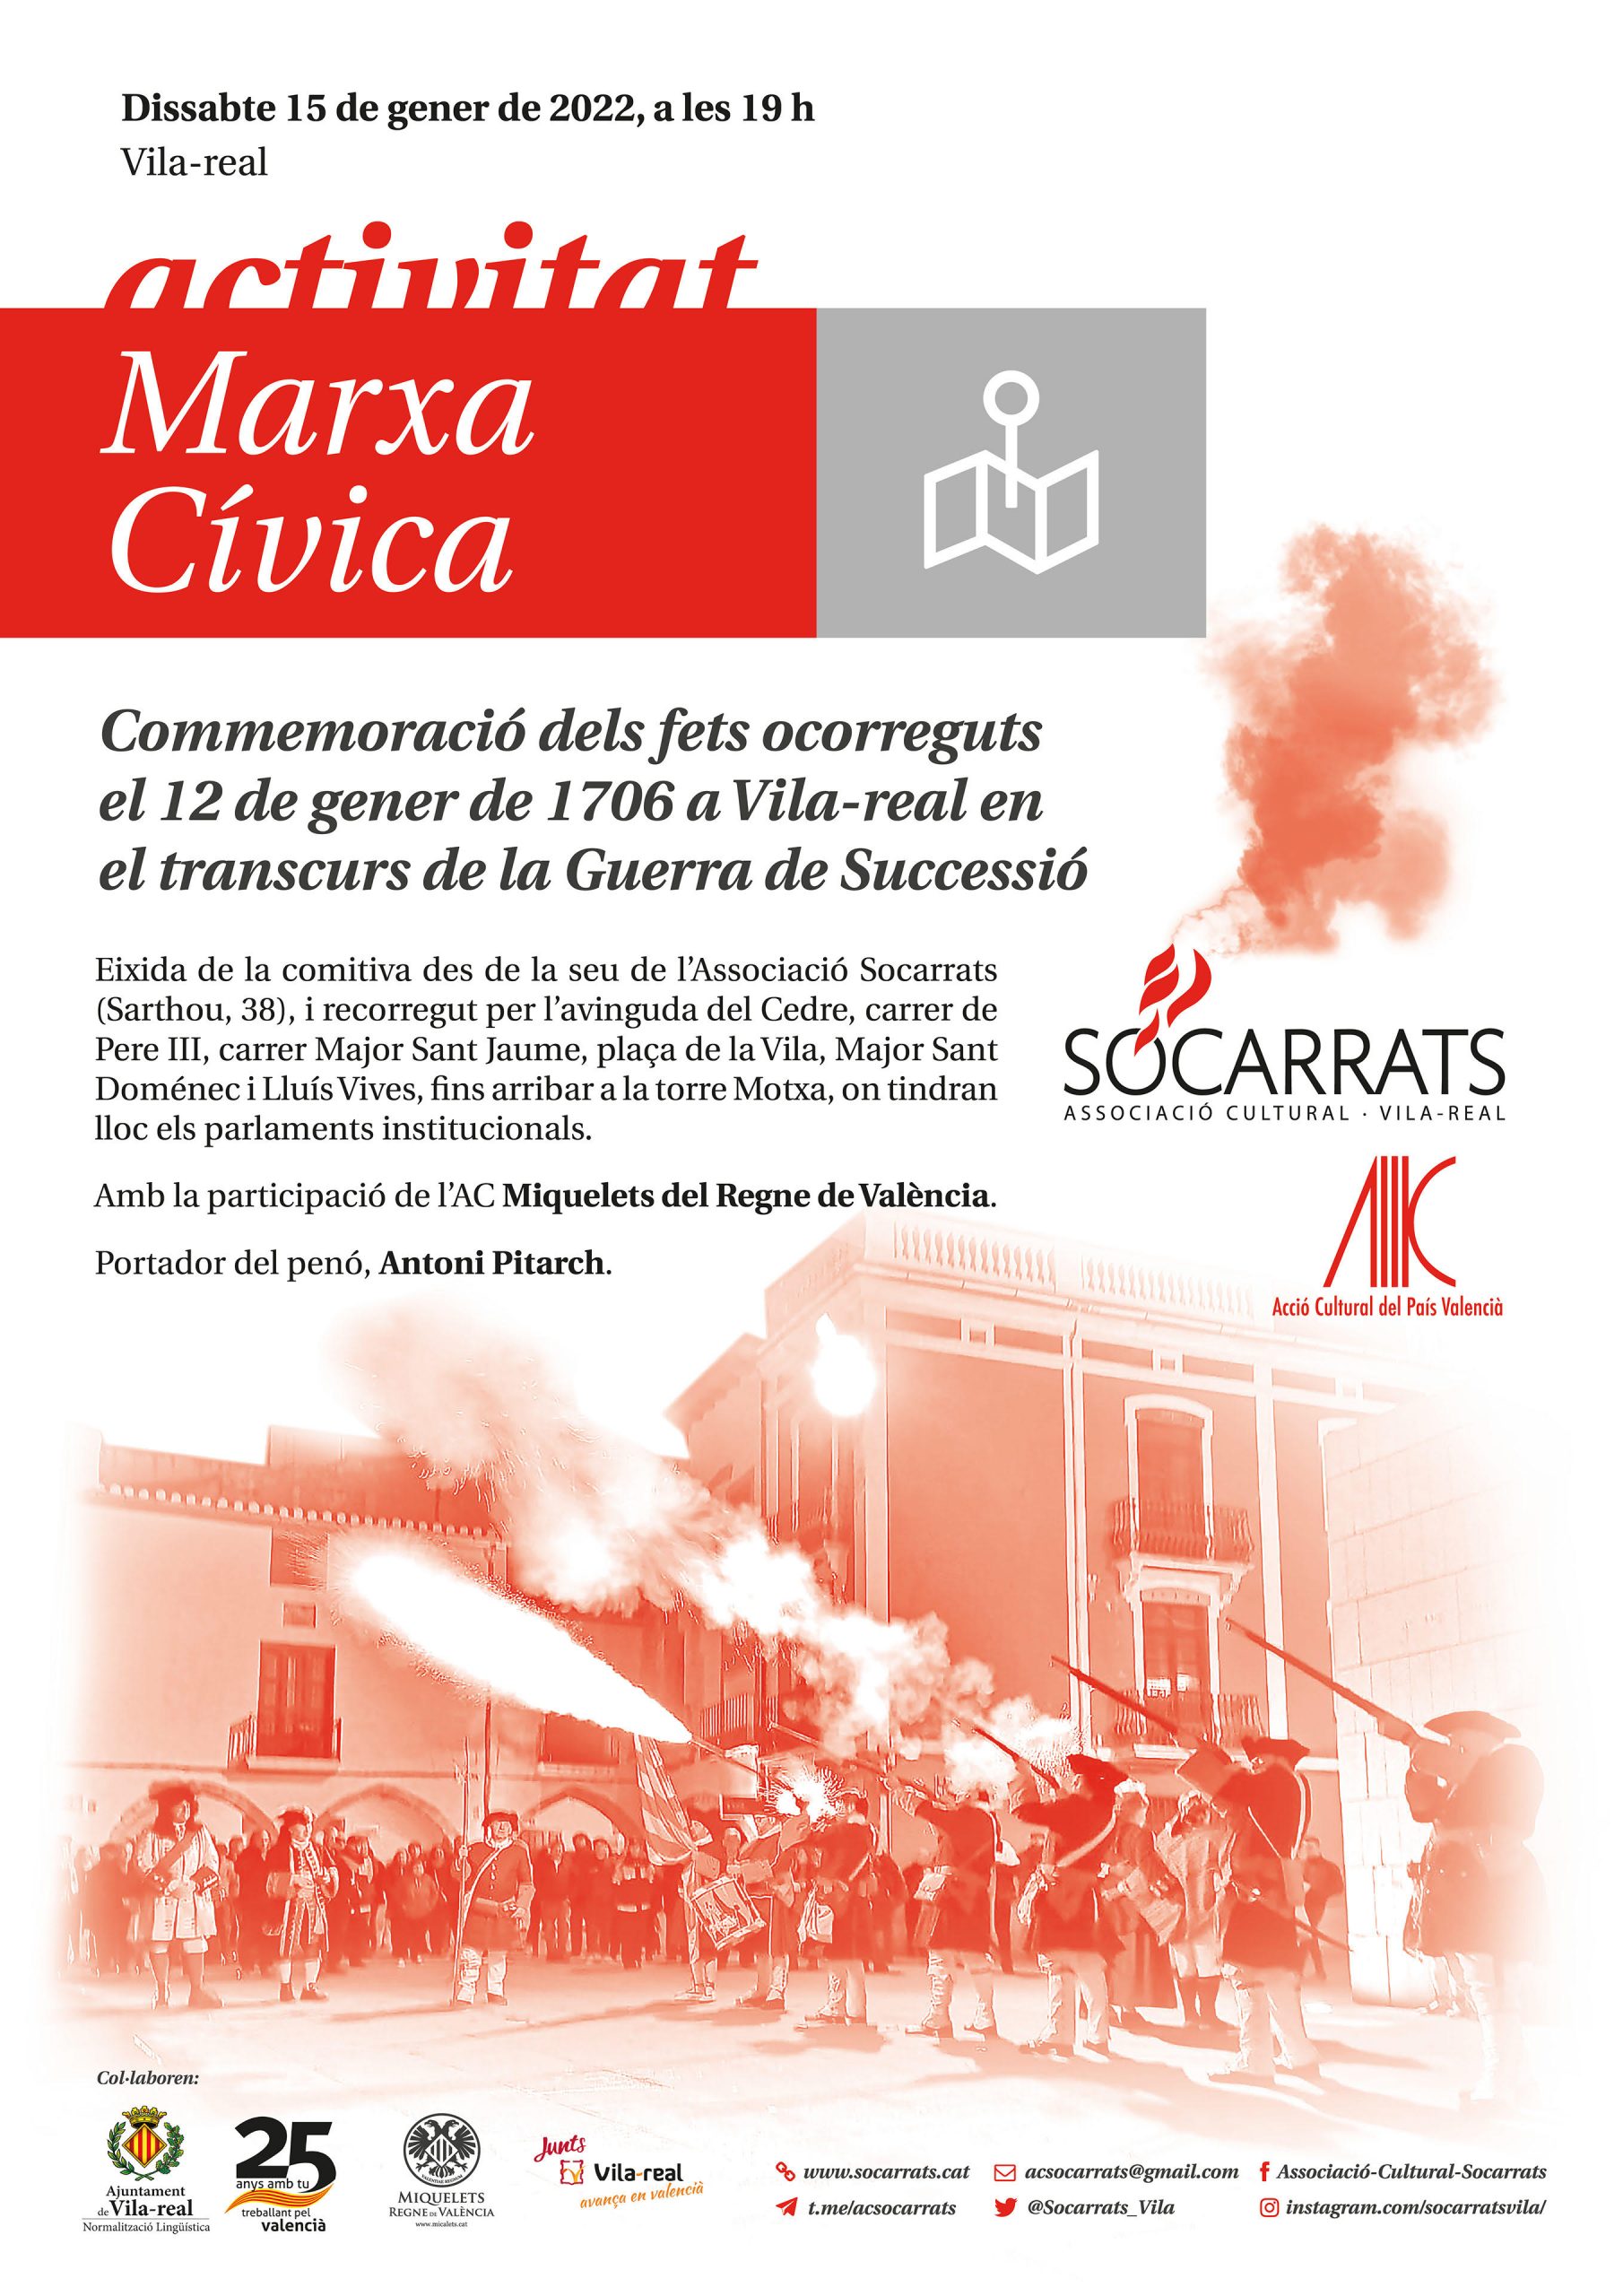 Vila-real conmemora la Crema de 1706 con la tradicional marcha cívica por las calles de la ciudad